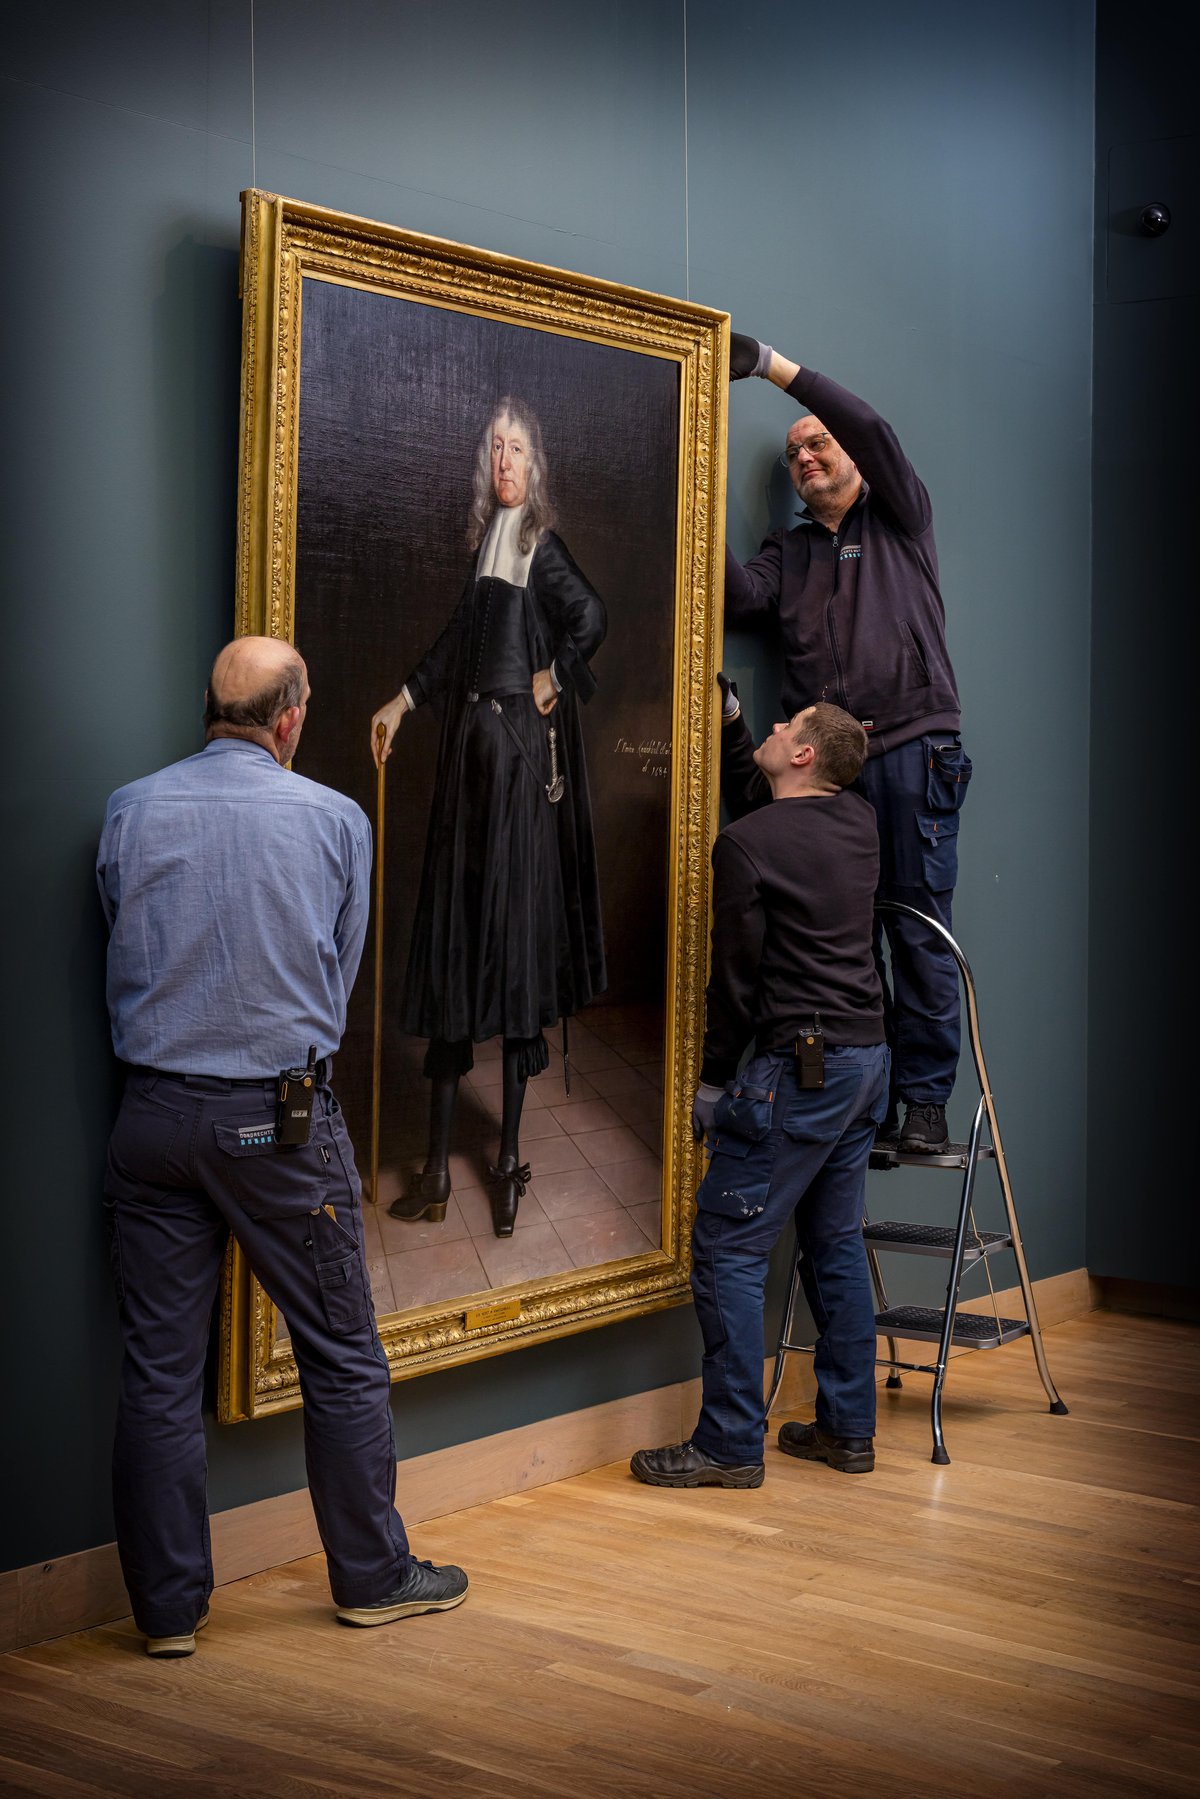 Van Hoogstraten toegevoegd aan collectie Dordrechts Museum. Het schilderij wordt opgehangen op zaal door twee medewerkers.